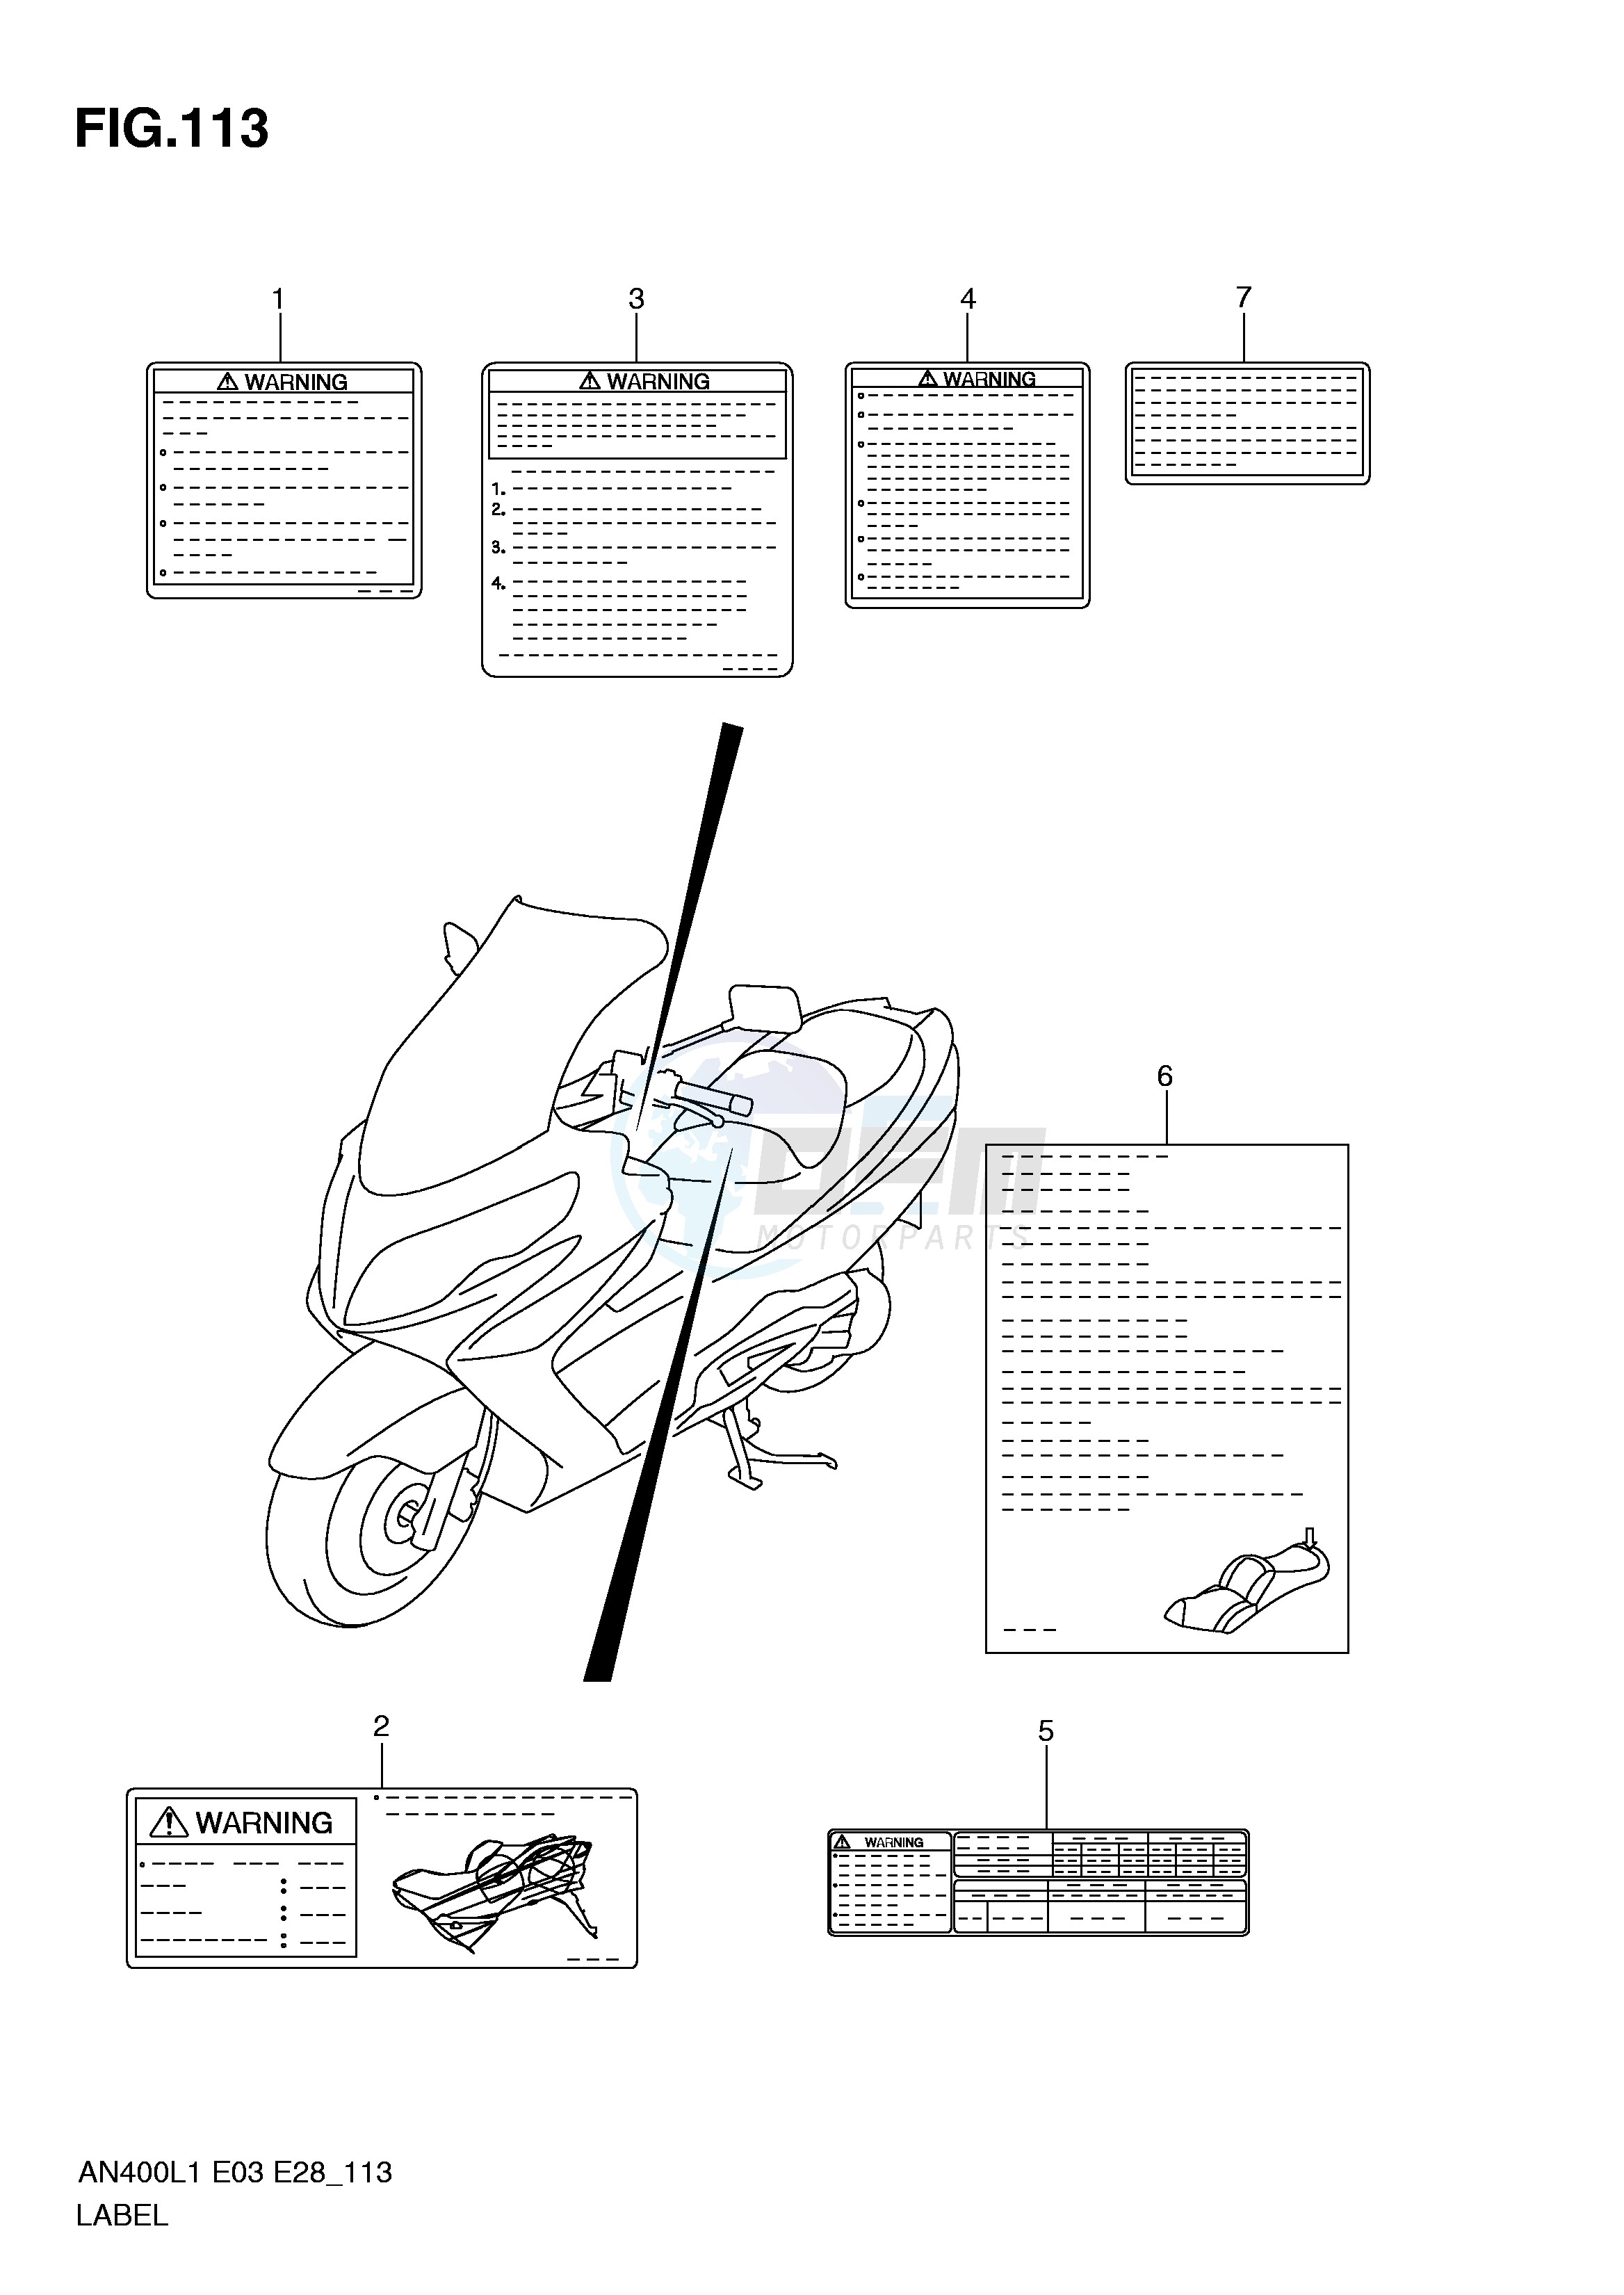 LABEL (AN400L1 E3) blueprint